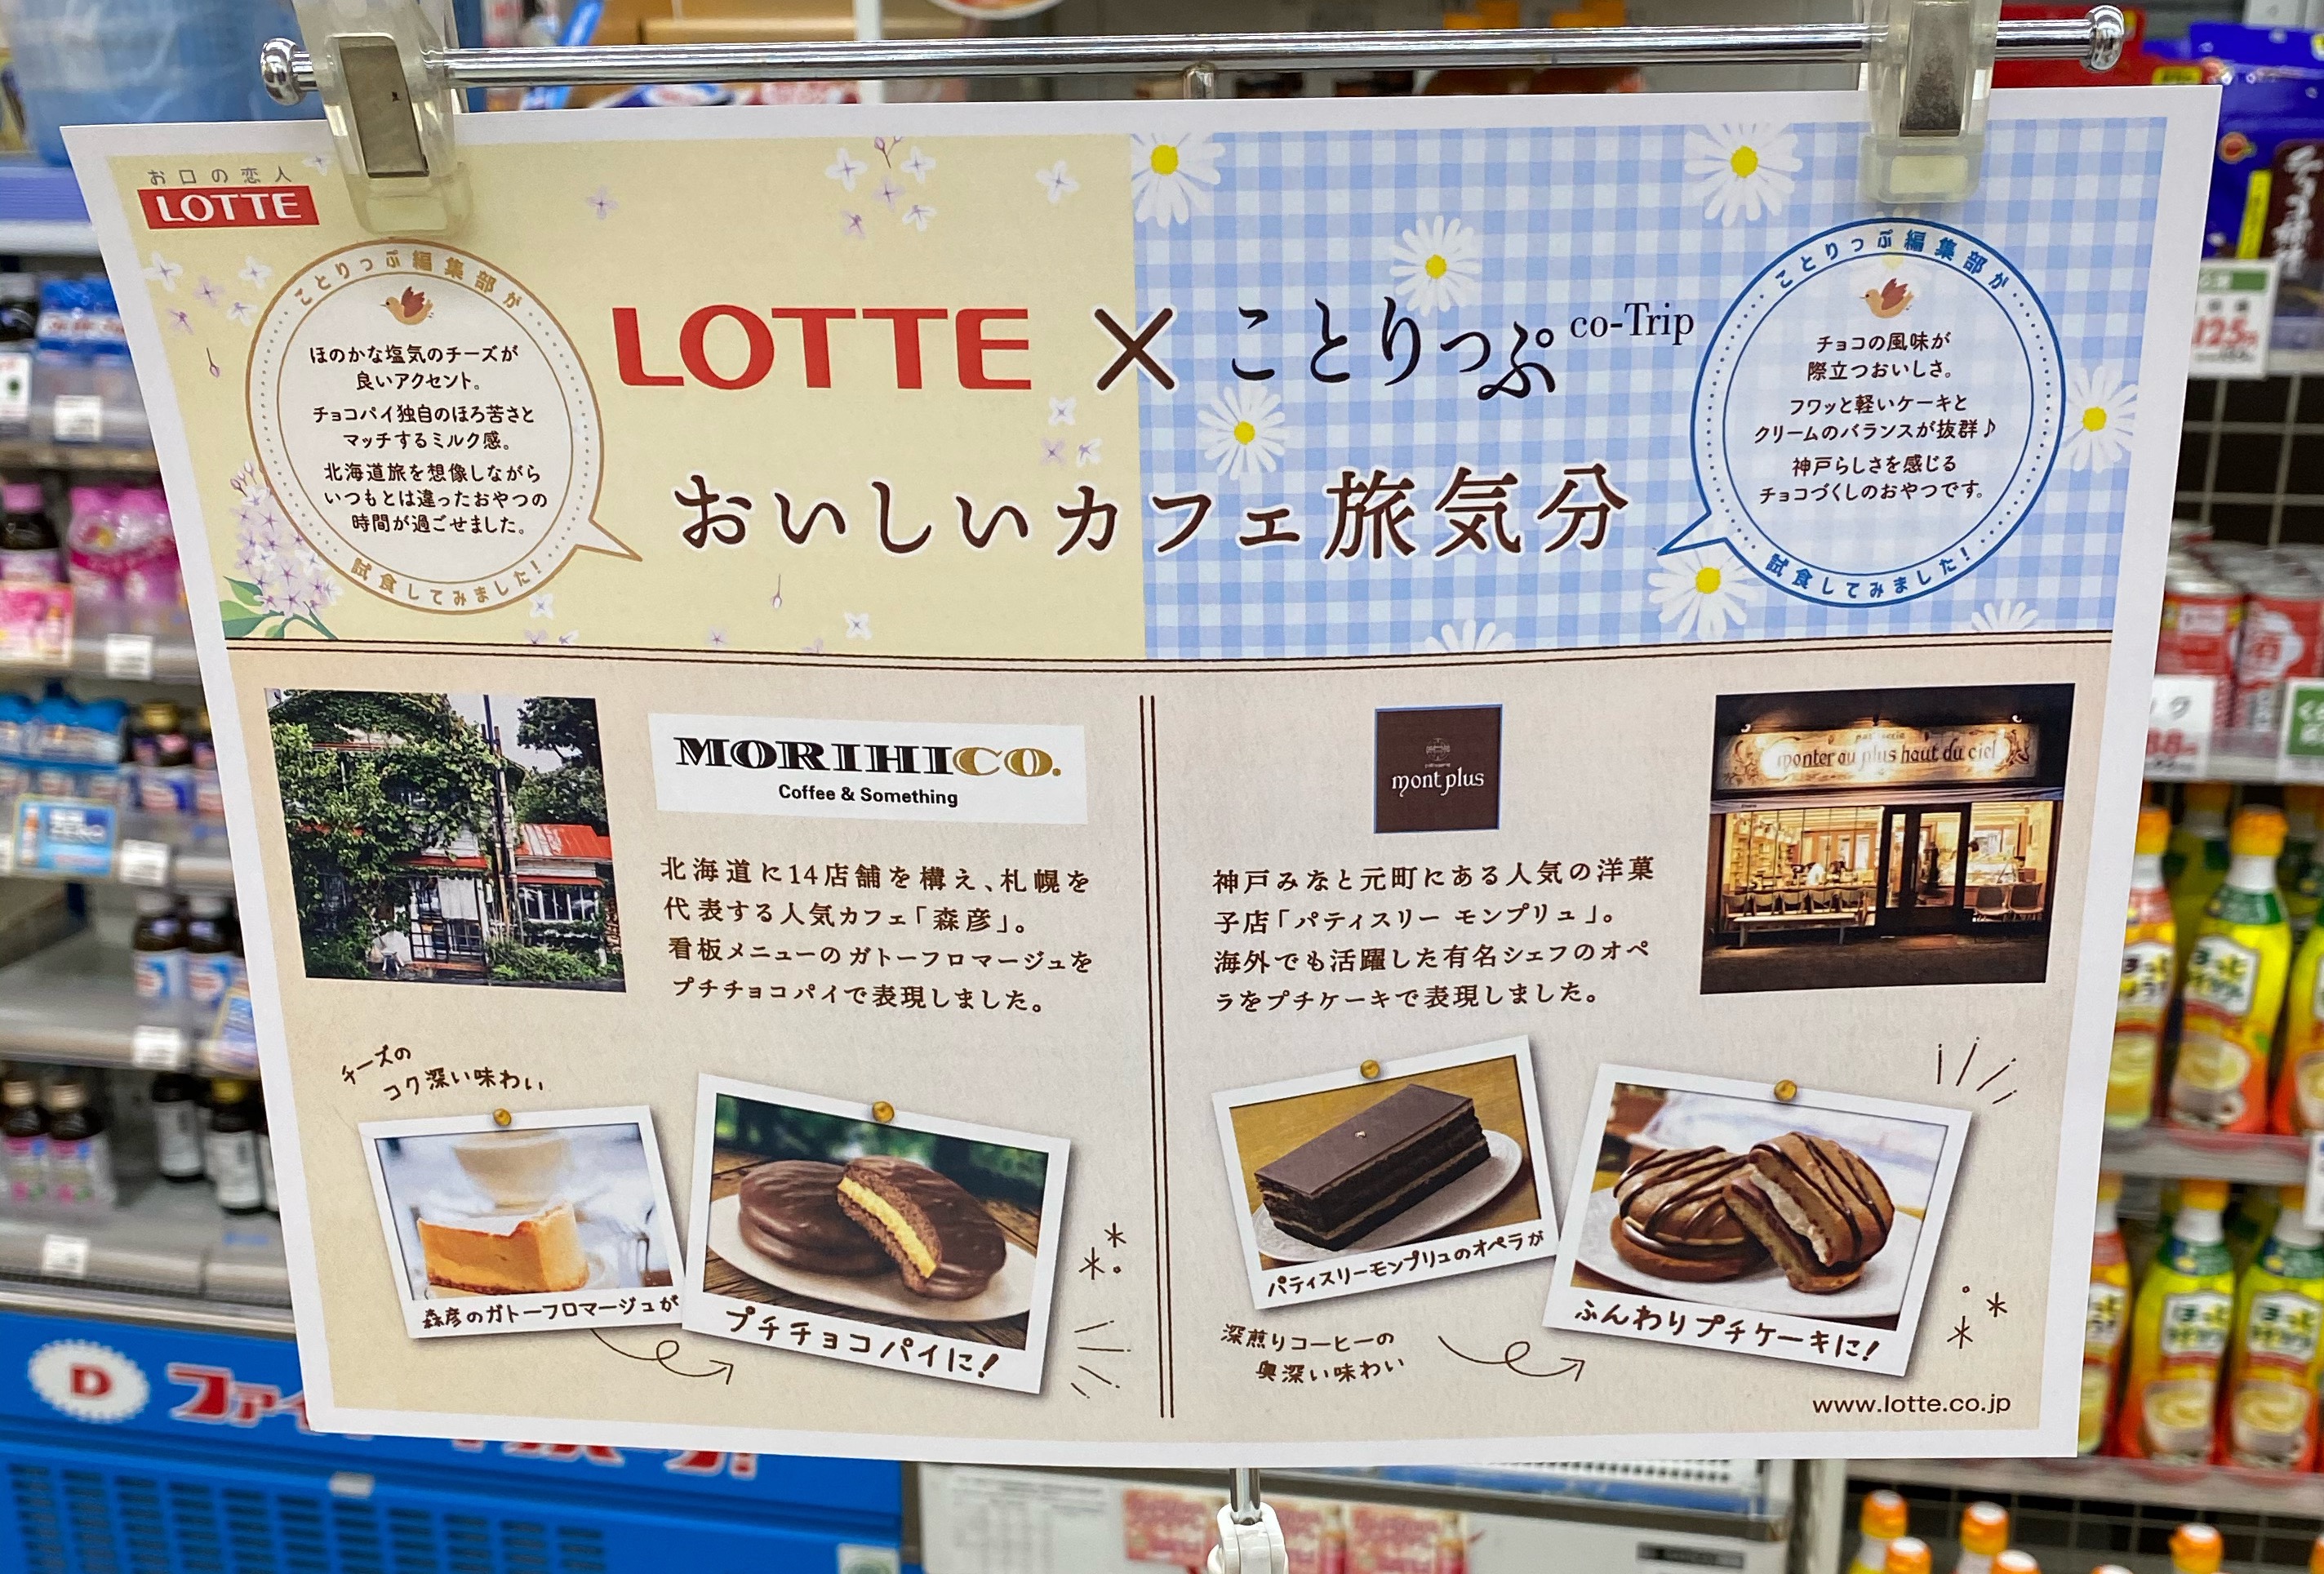 「LOTTE×ことりっぷ おいしいカフェ旅気分」のパンフレットを発見